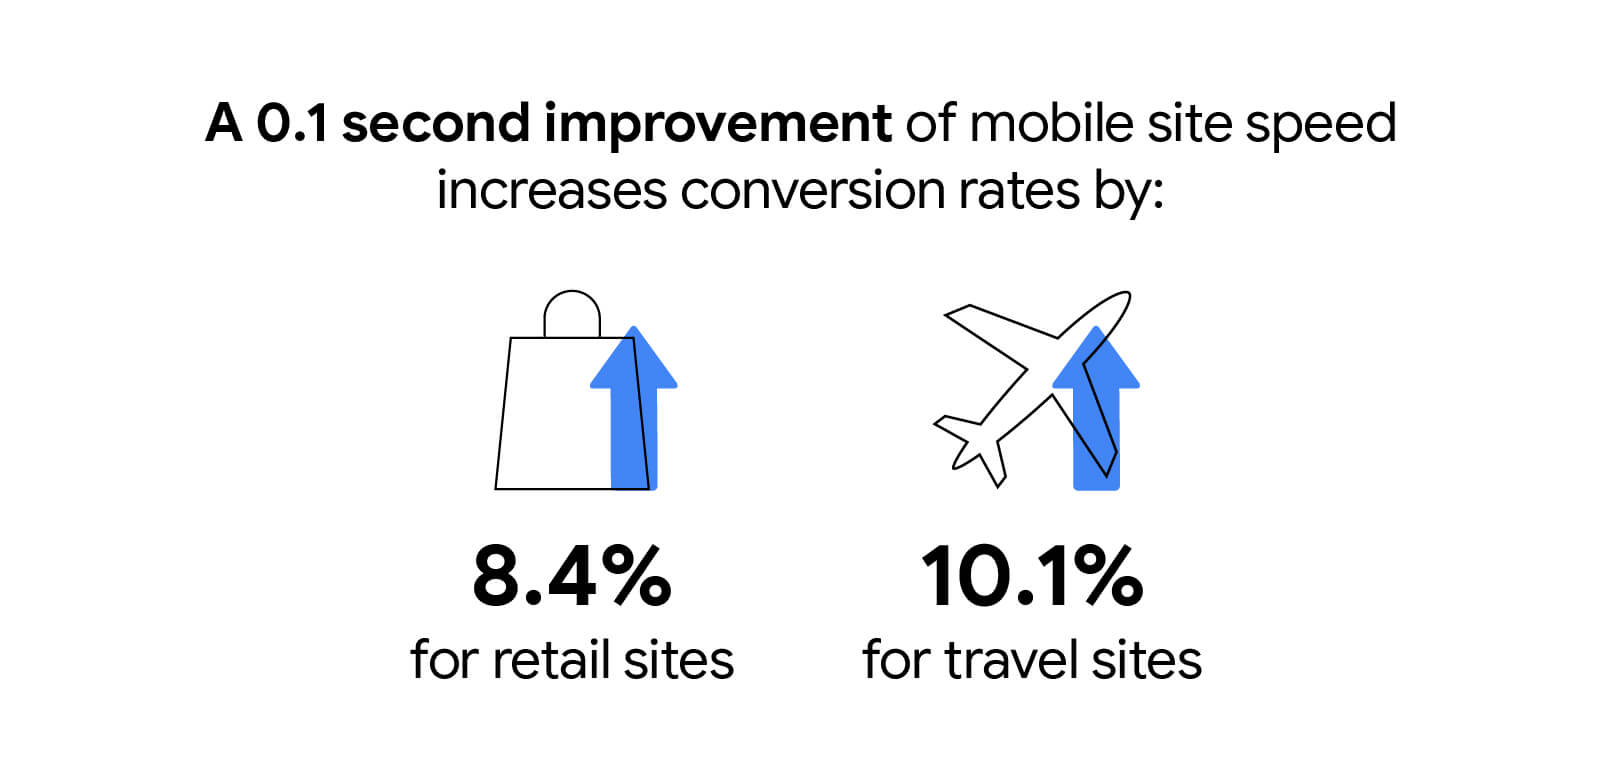 Una mejora de 0.1 segundo en la velocidad del sitio móvil aumenta los porcentajes de conversiones en un 8.4% para los sitios minoristas y un 10.1% para los sitios de viajes.